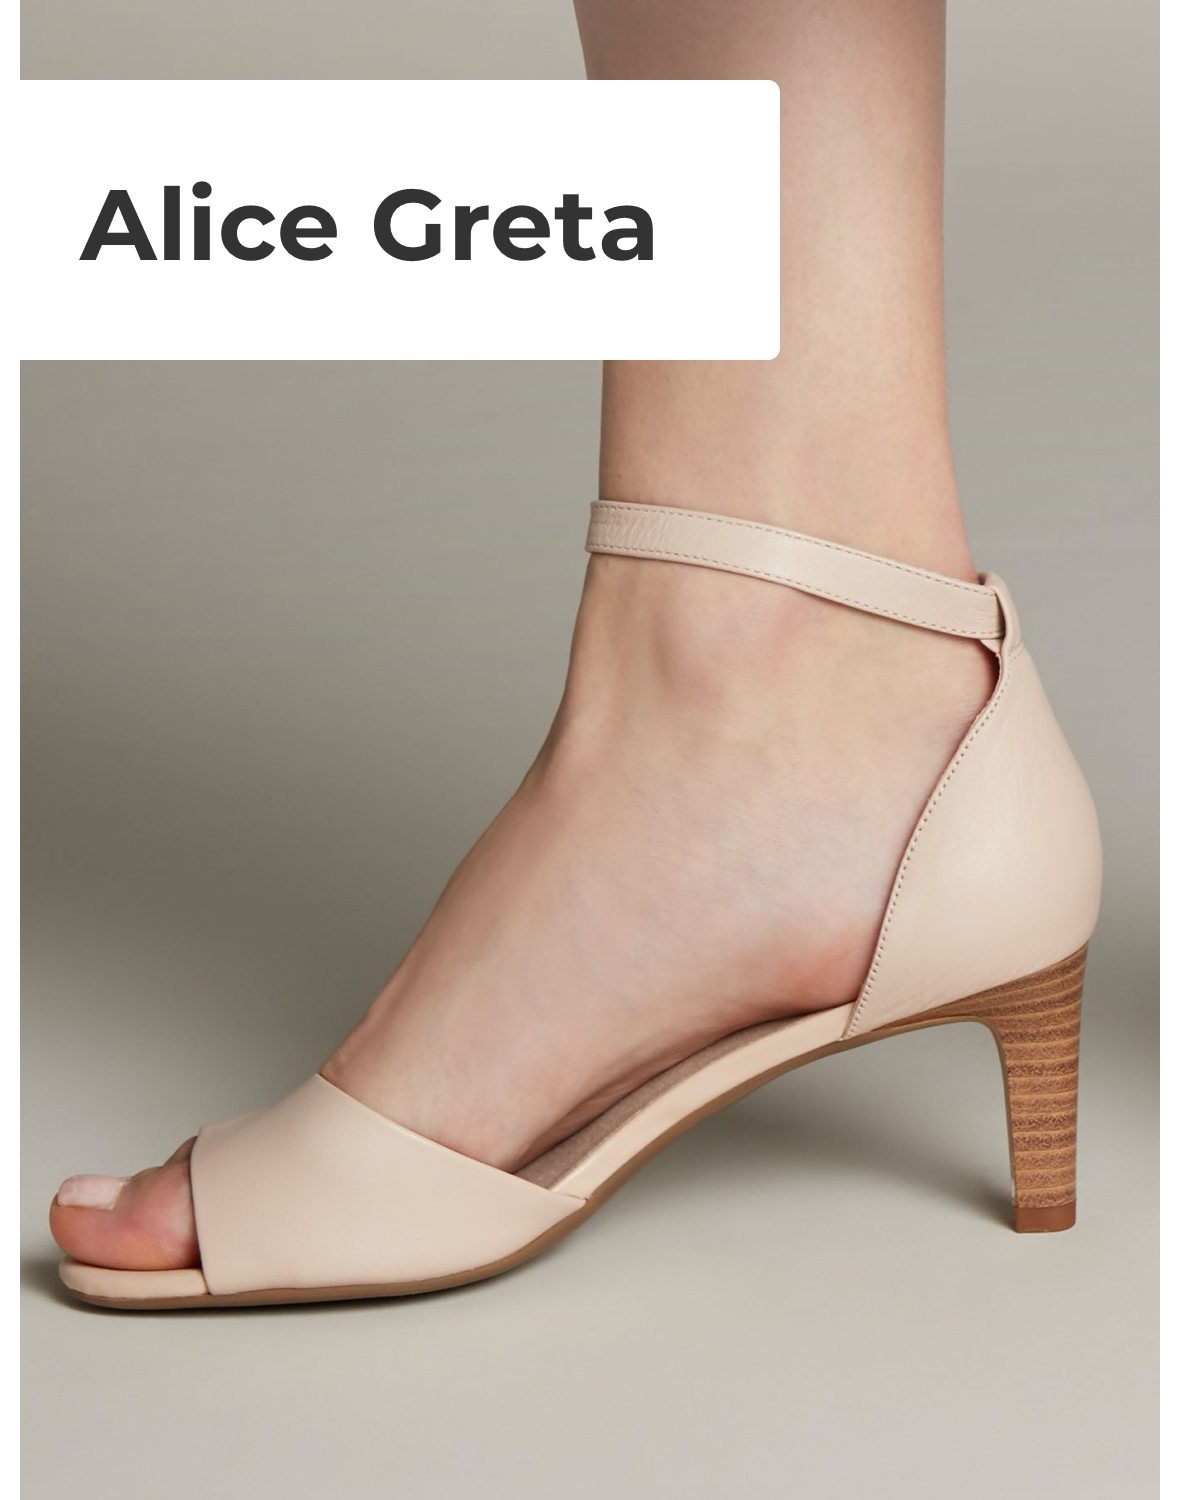 Clarks Women's Alice Greta Ankle Strap Heels